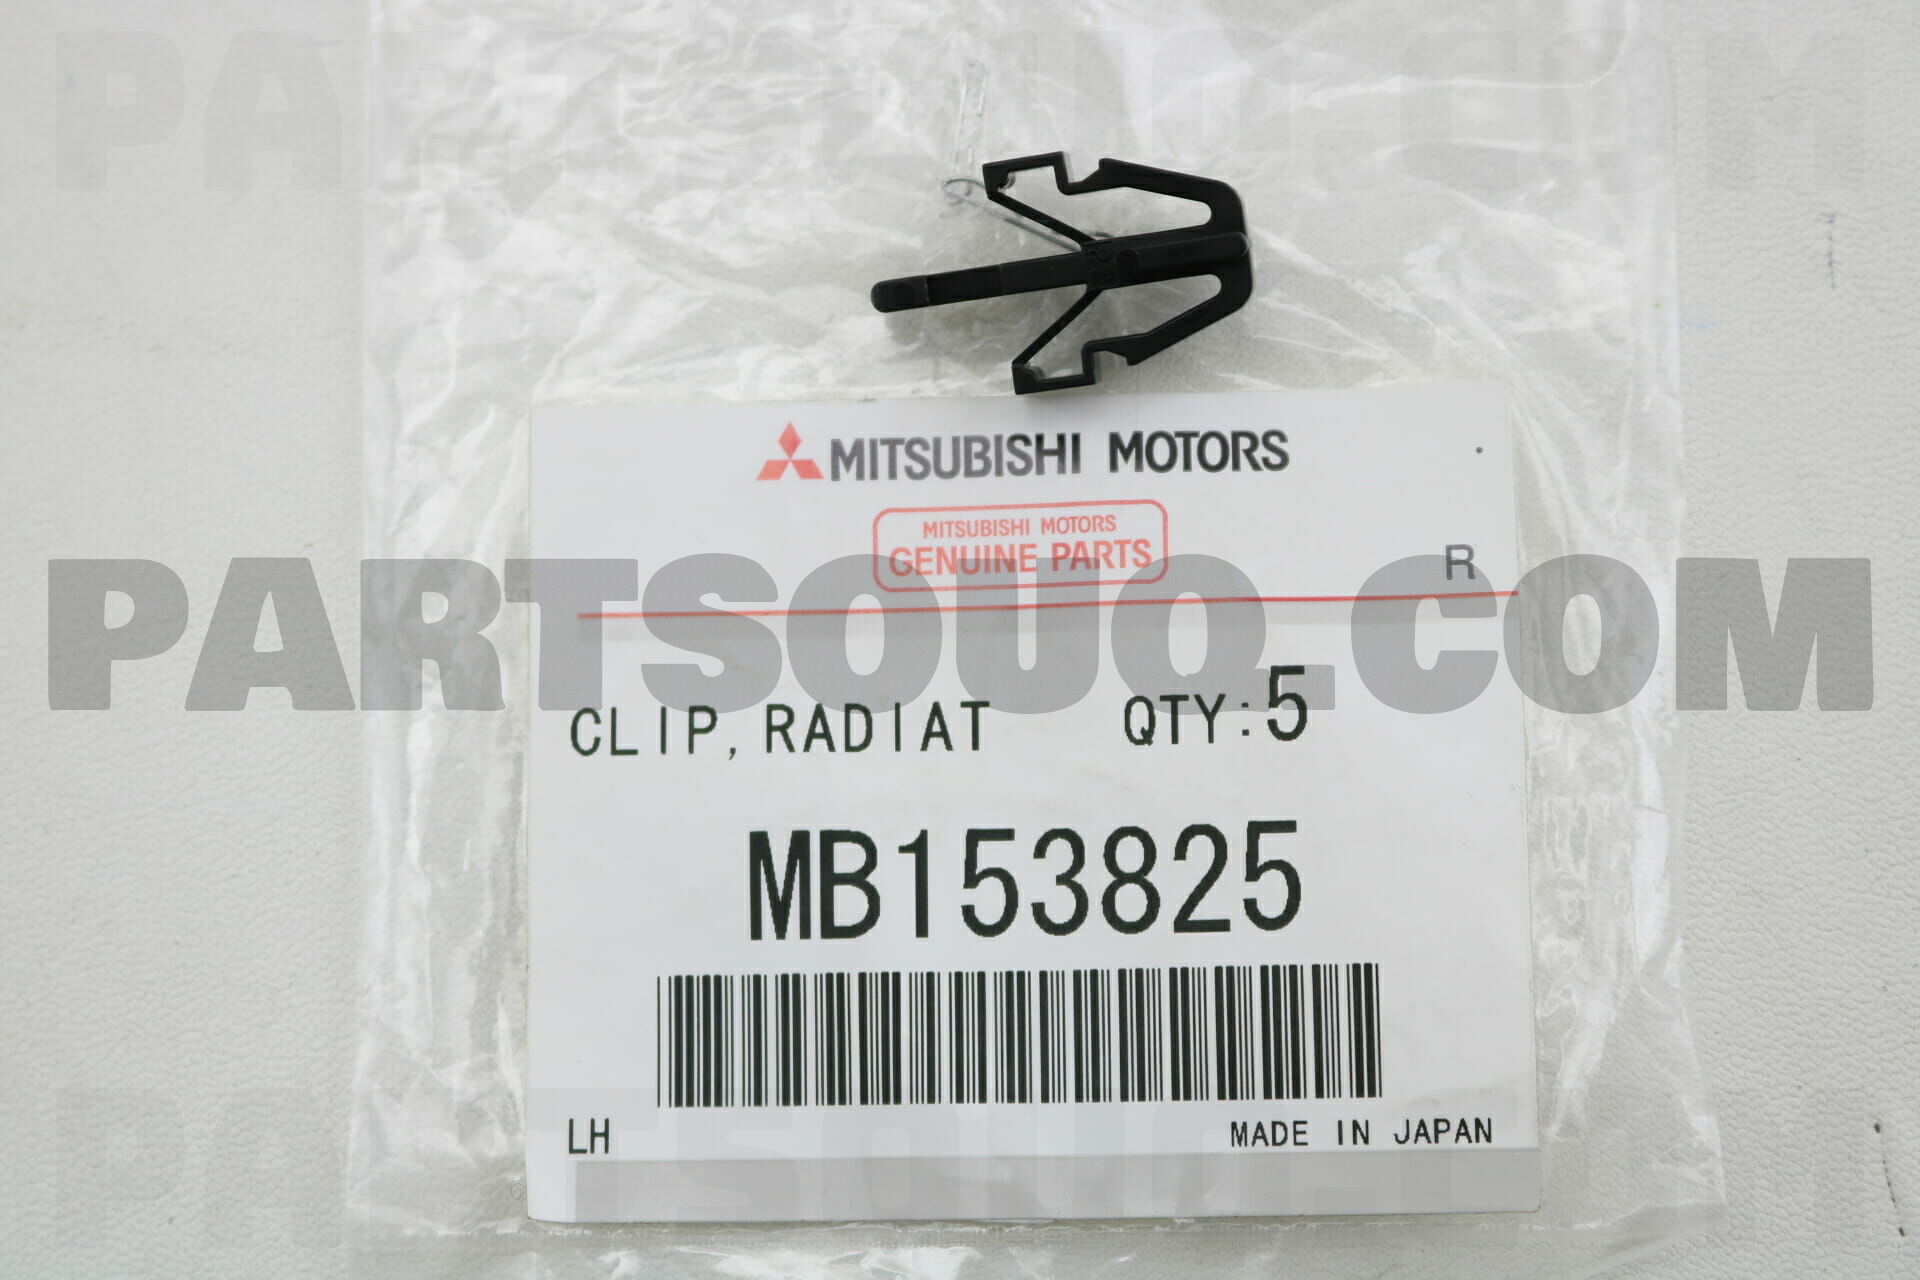 MITSUBISHI Grille and Headlamp Clips Mitsubishi # MB153825